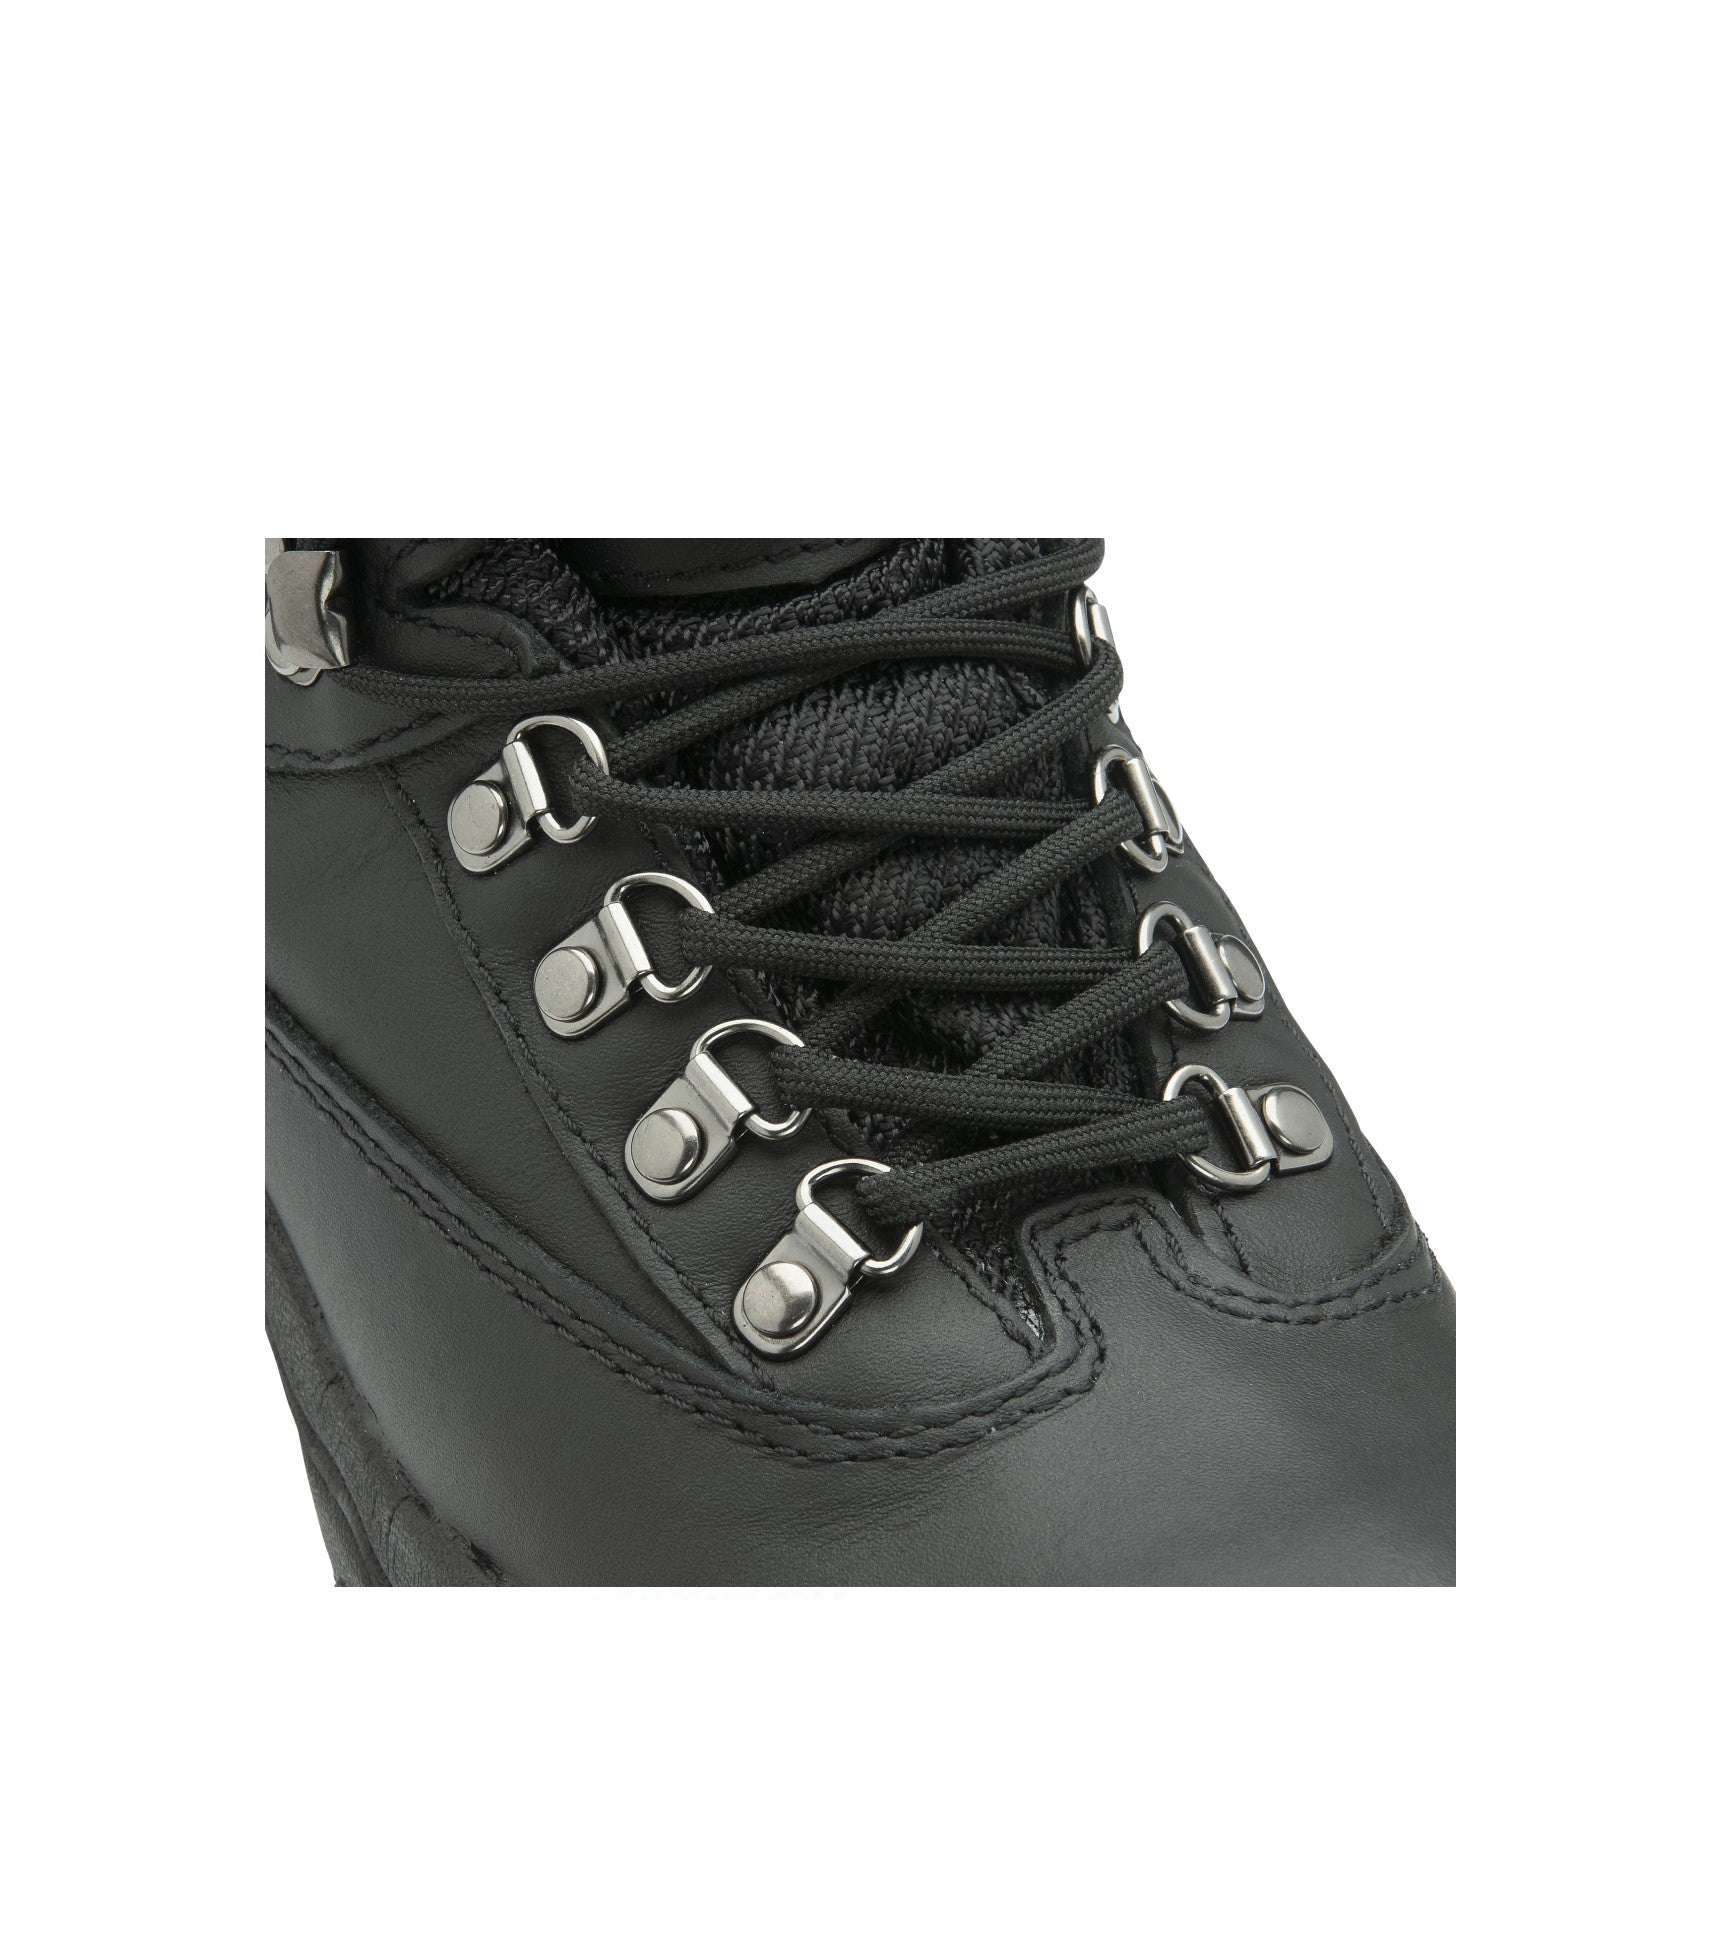 Women's Leather Waterproof Walking Boots